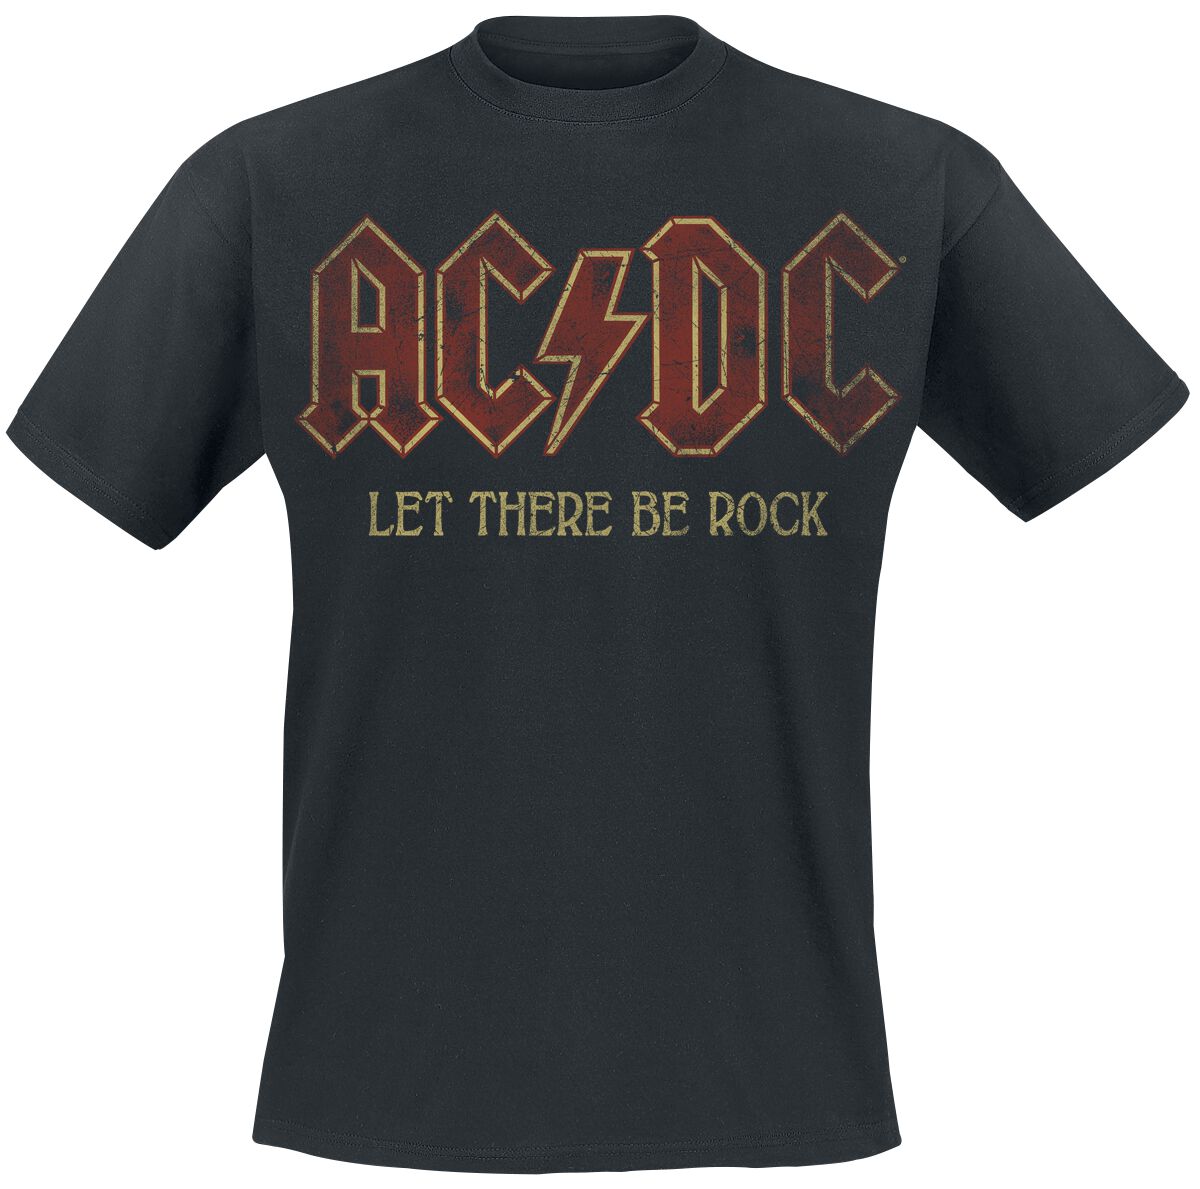 AC/DC T-Shirt - Sounds Light Drums Guitar - S bis 5XL - für Männer - Größe S - schwarz  - Lizenziertes Merchandise!